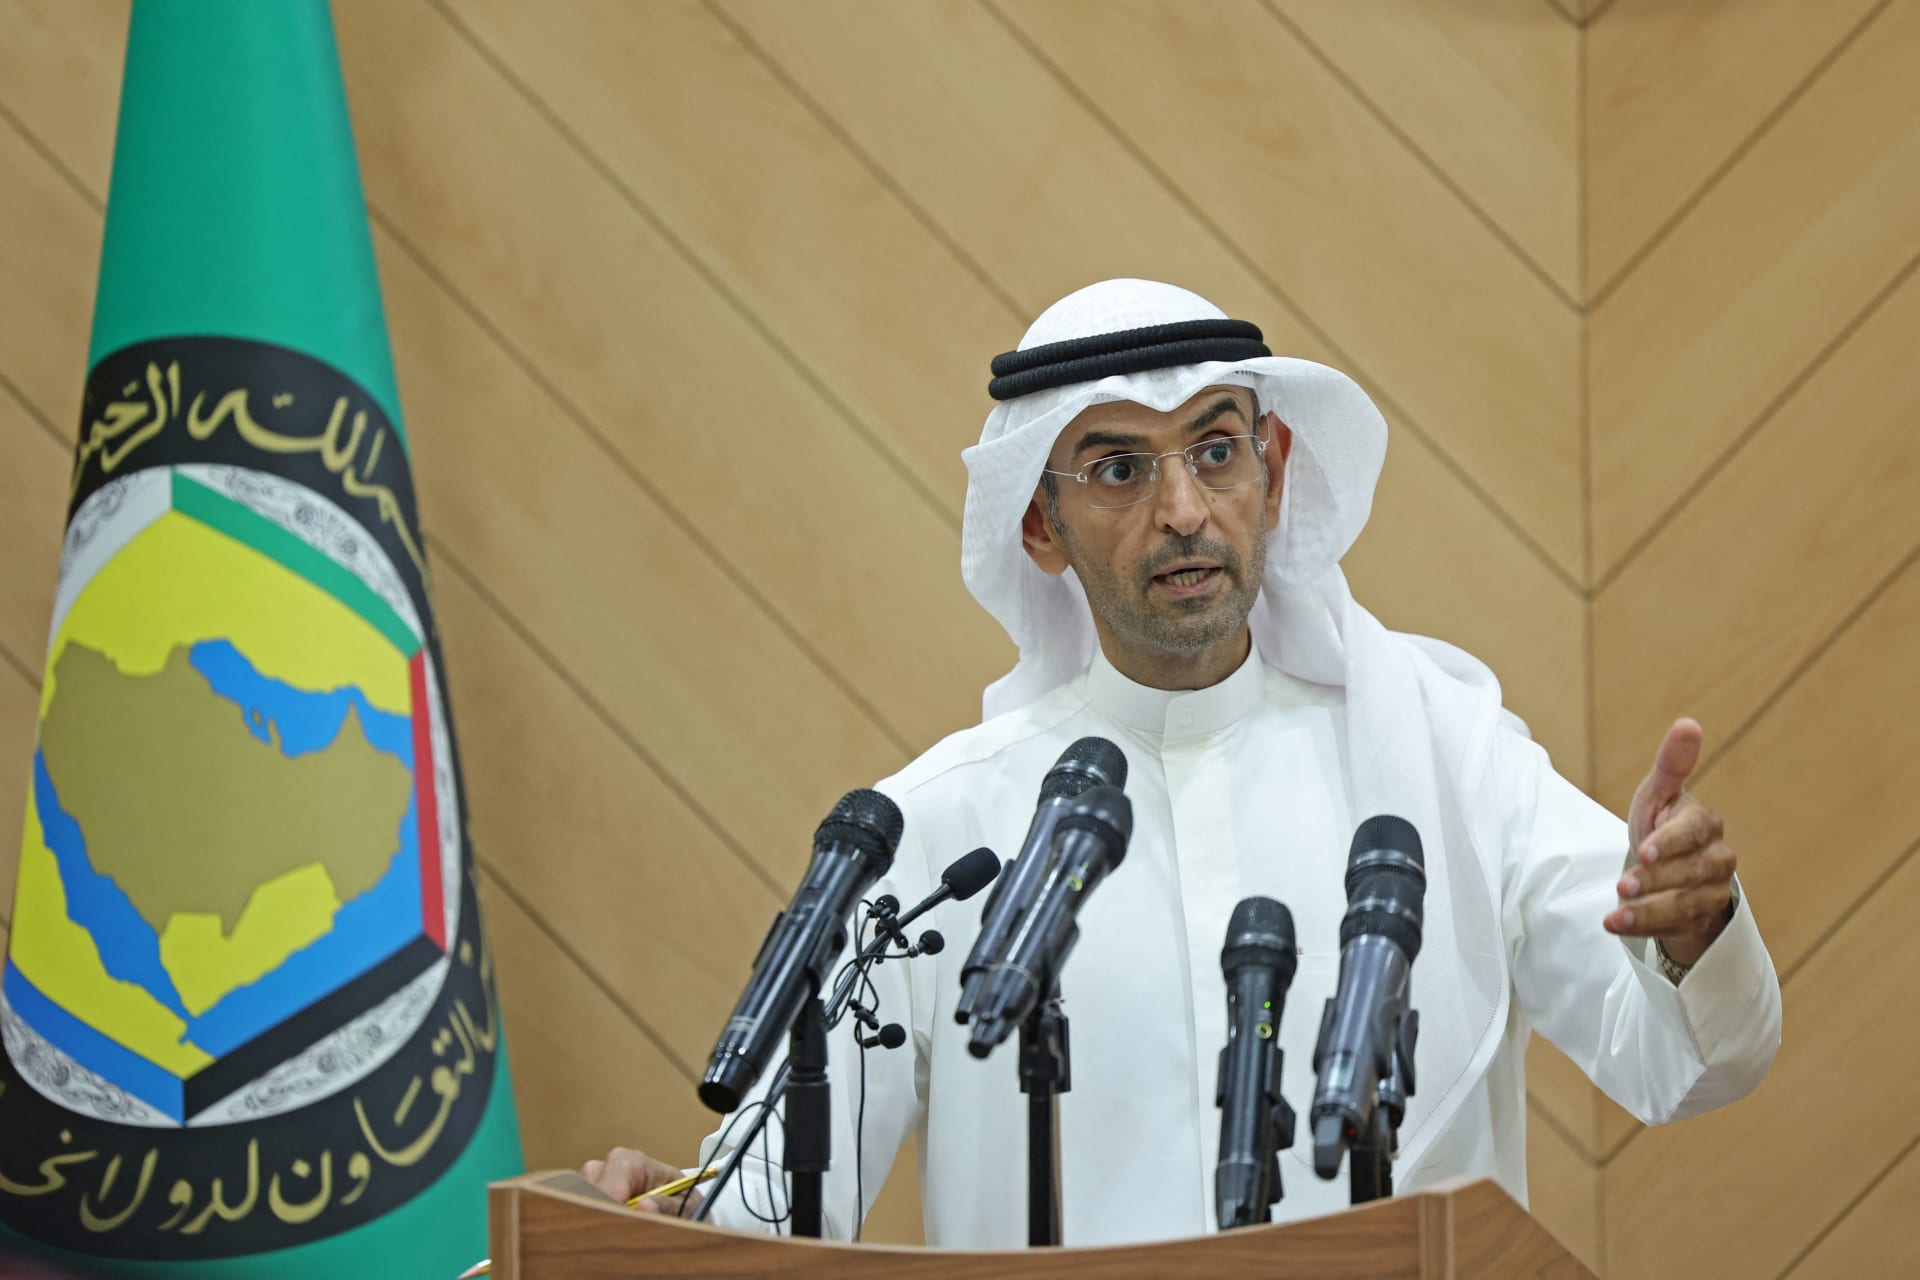 مجلس التعاون الخليجي يعلن عن مشاورات يمنية ويكشف أهدافها ومحاورها